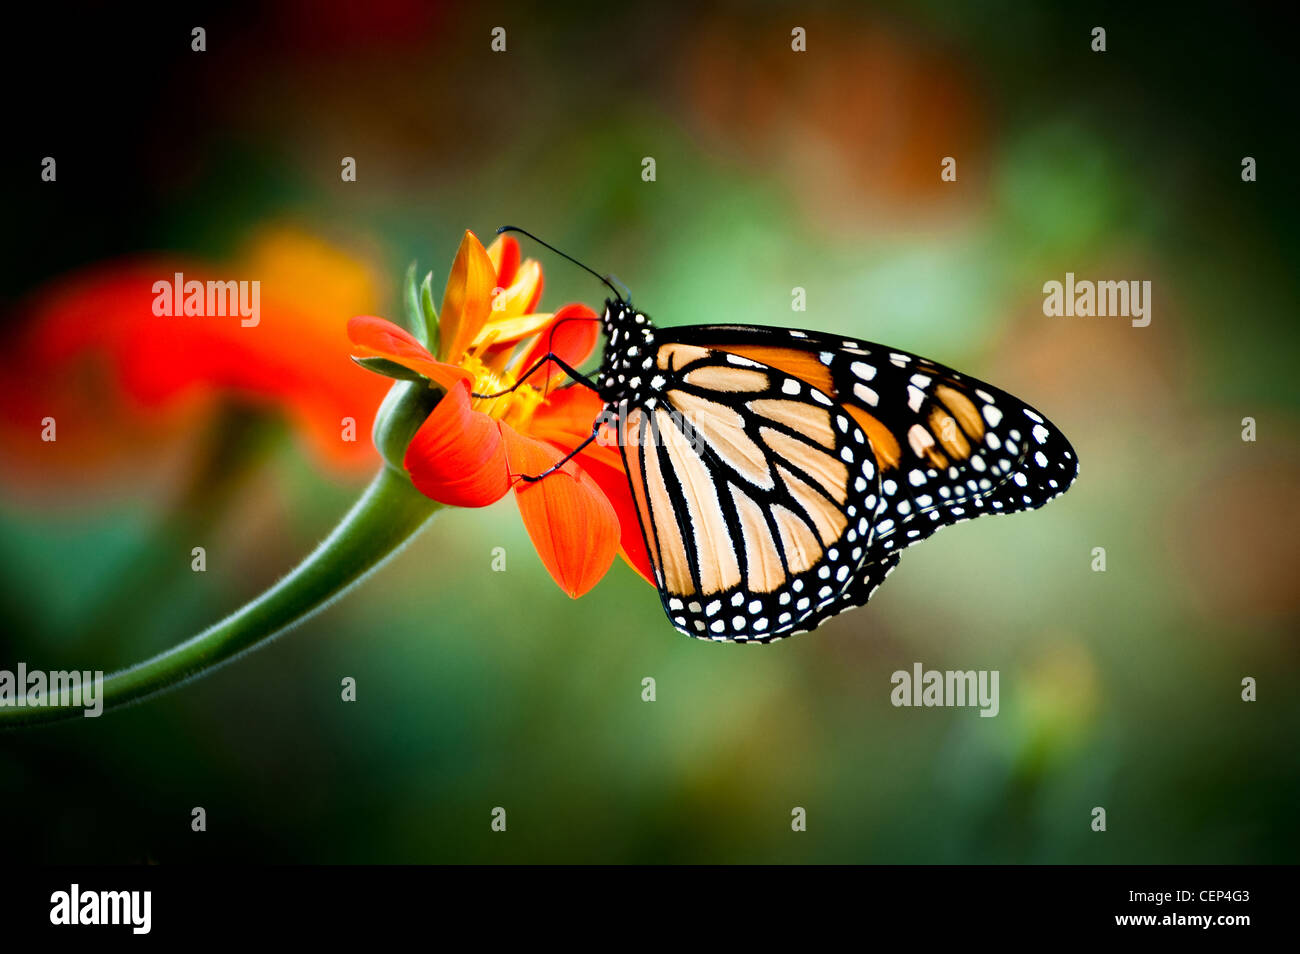 Monarch Butterfly on an orange flower Stock Photo